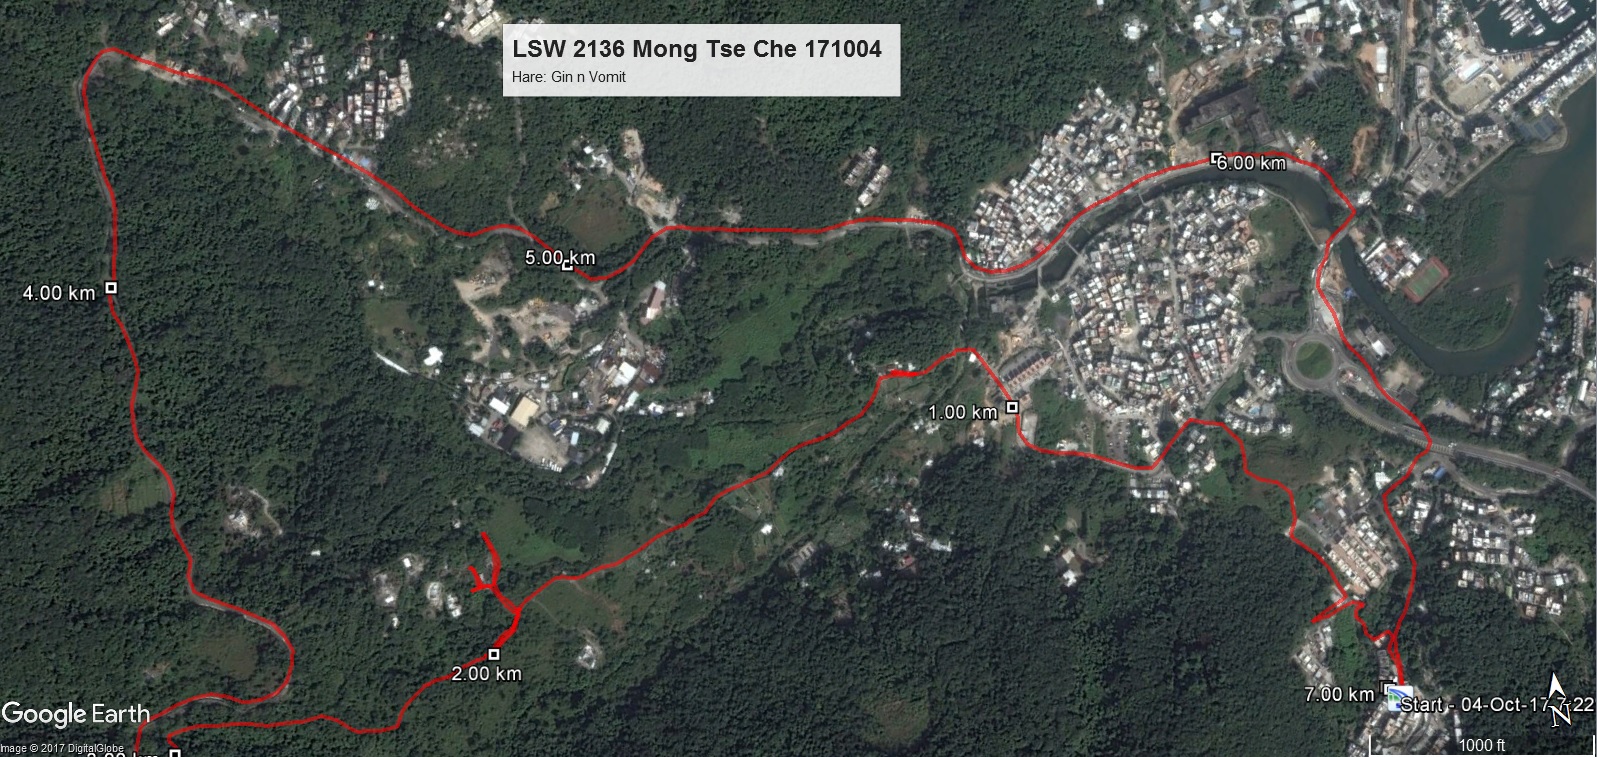 Mong Tse Che 171004 7.00km 47min